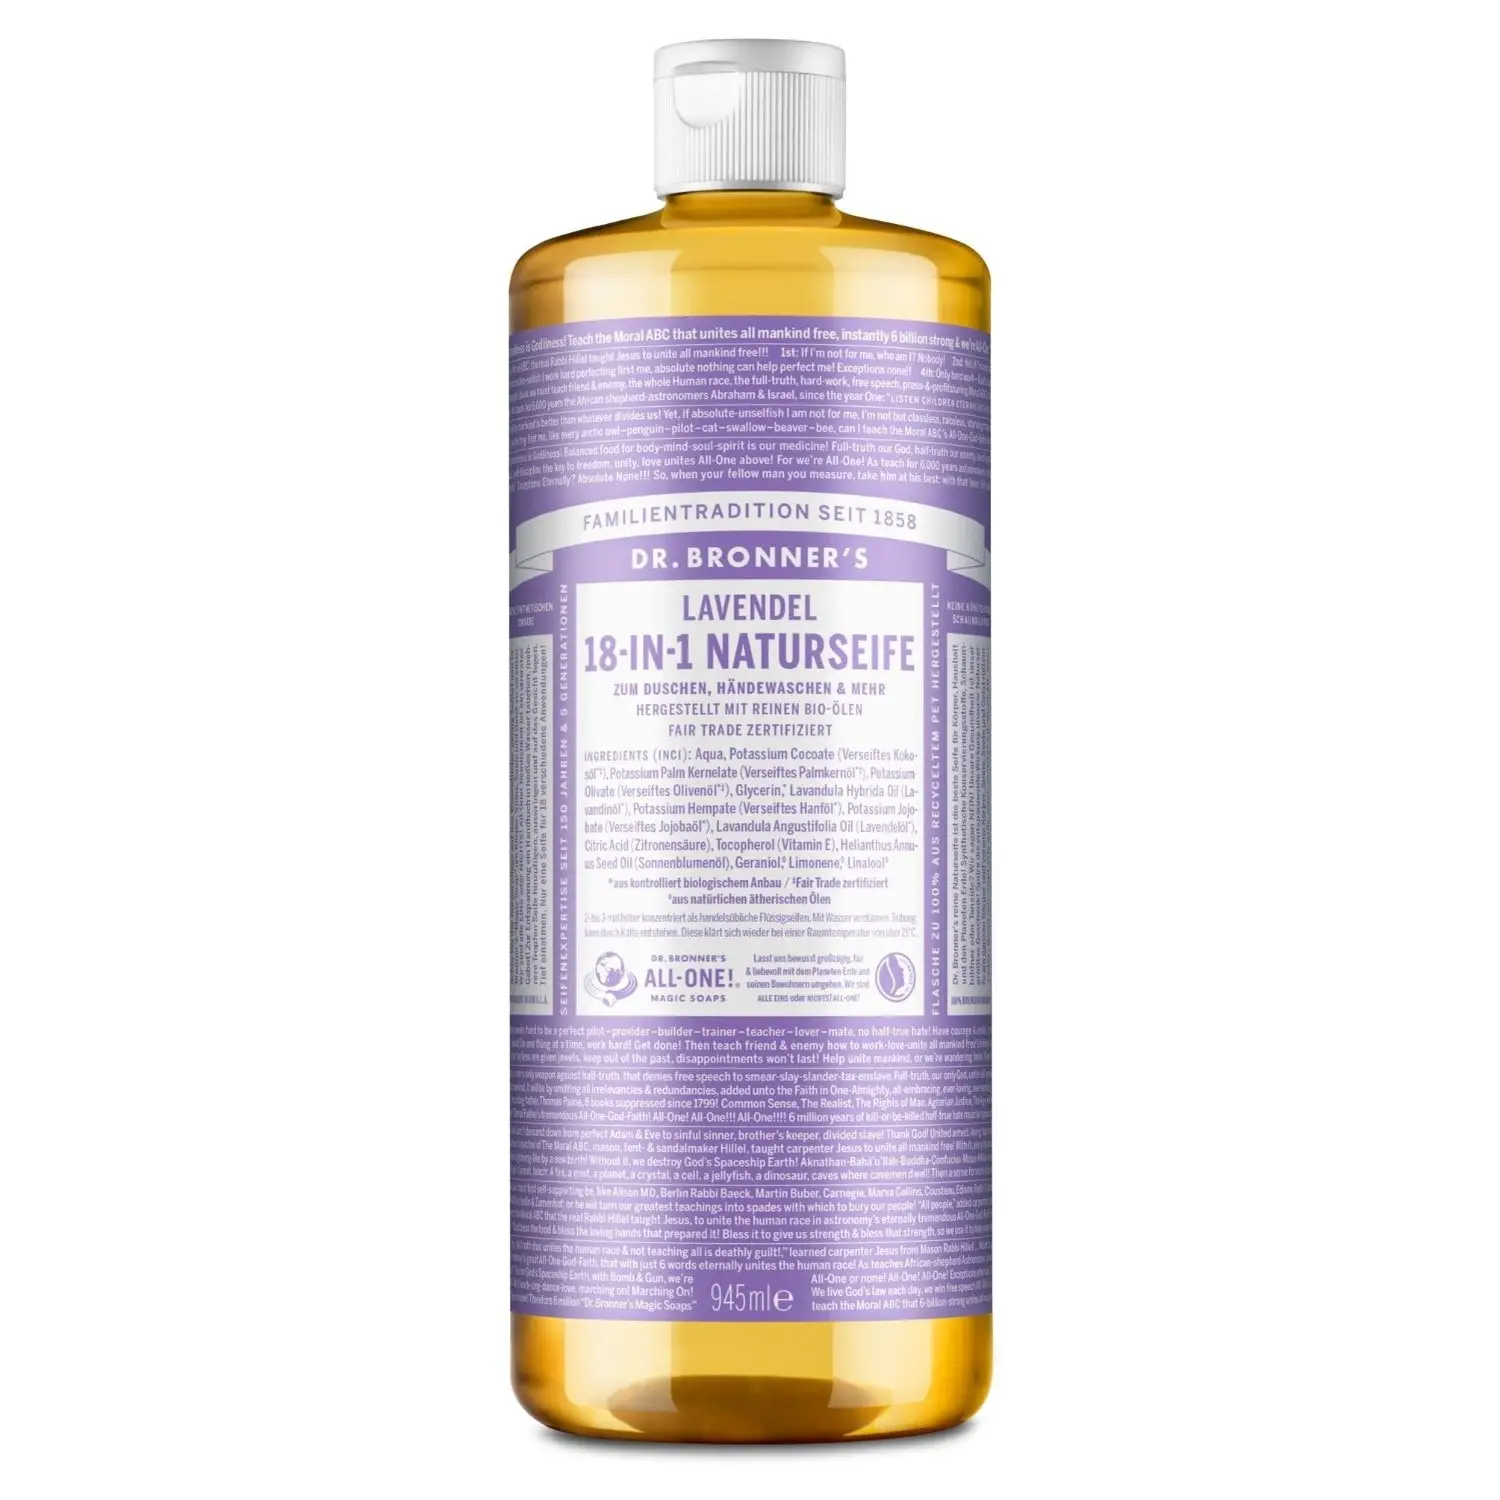 Dr. Bronner’s Lavender Jabón Natural 945 ml